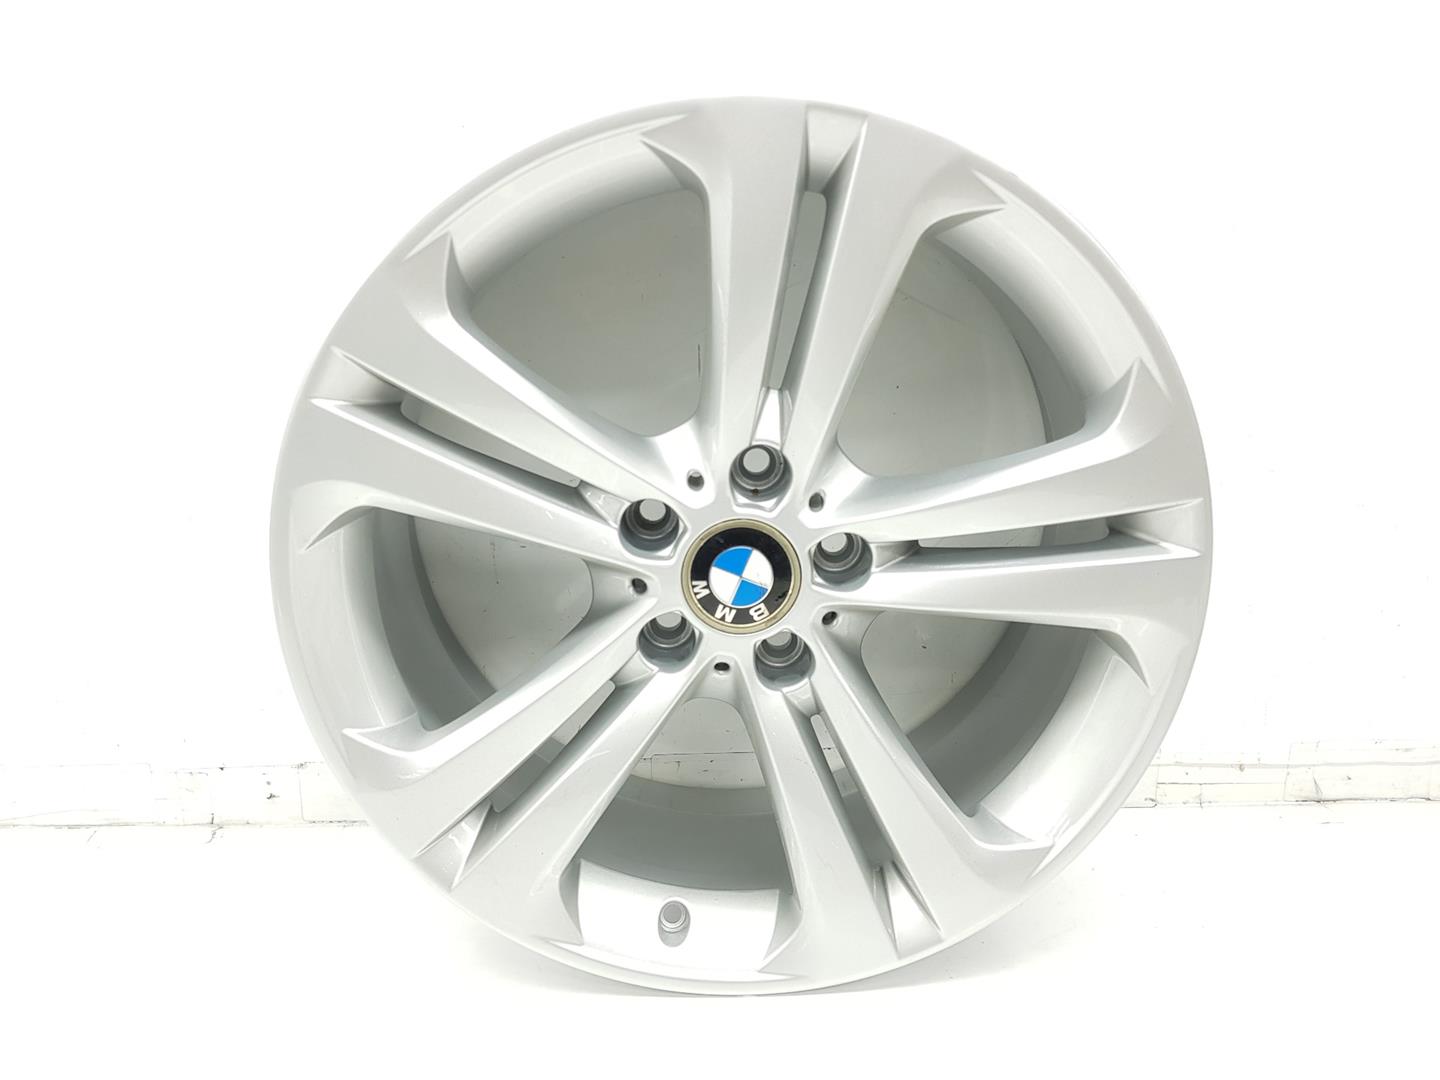 BMW 4 Series F32/F33/F36 (2013-2020) Wheel 36116796256, 8JX19, 19PULGADAS 24202480